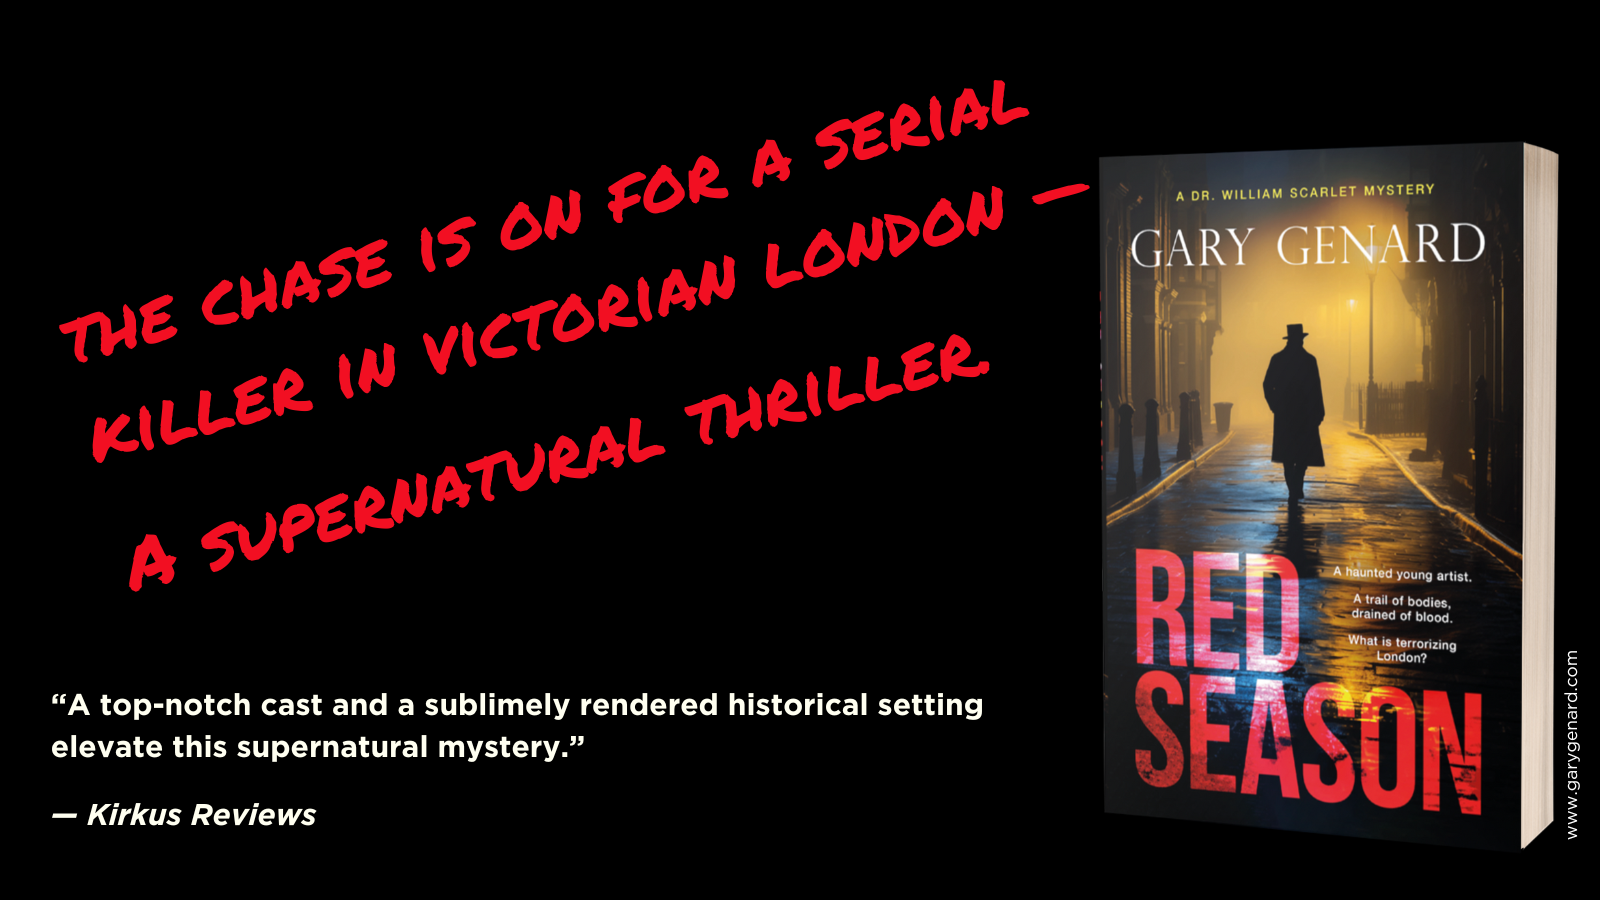 Red Season, an historical supernatural thriller, by Gary Genard.